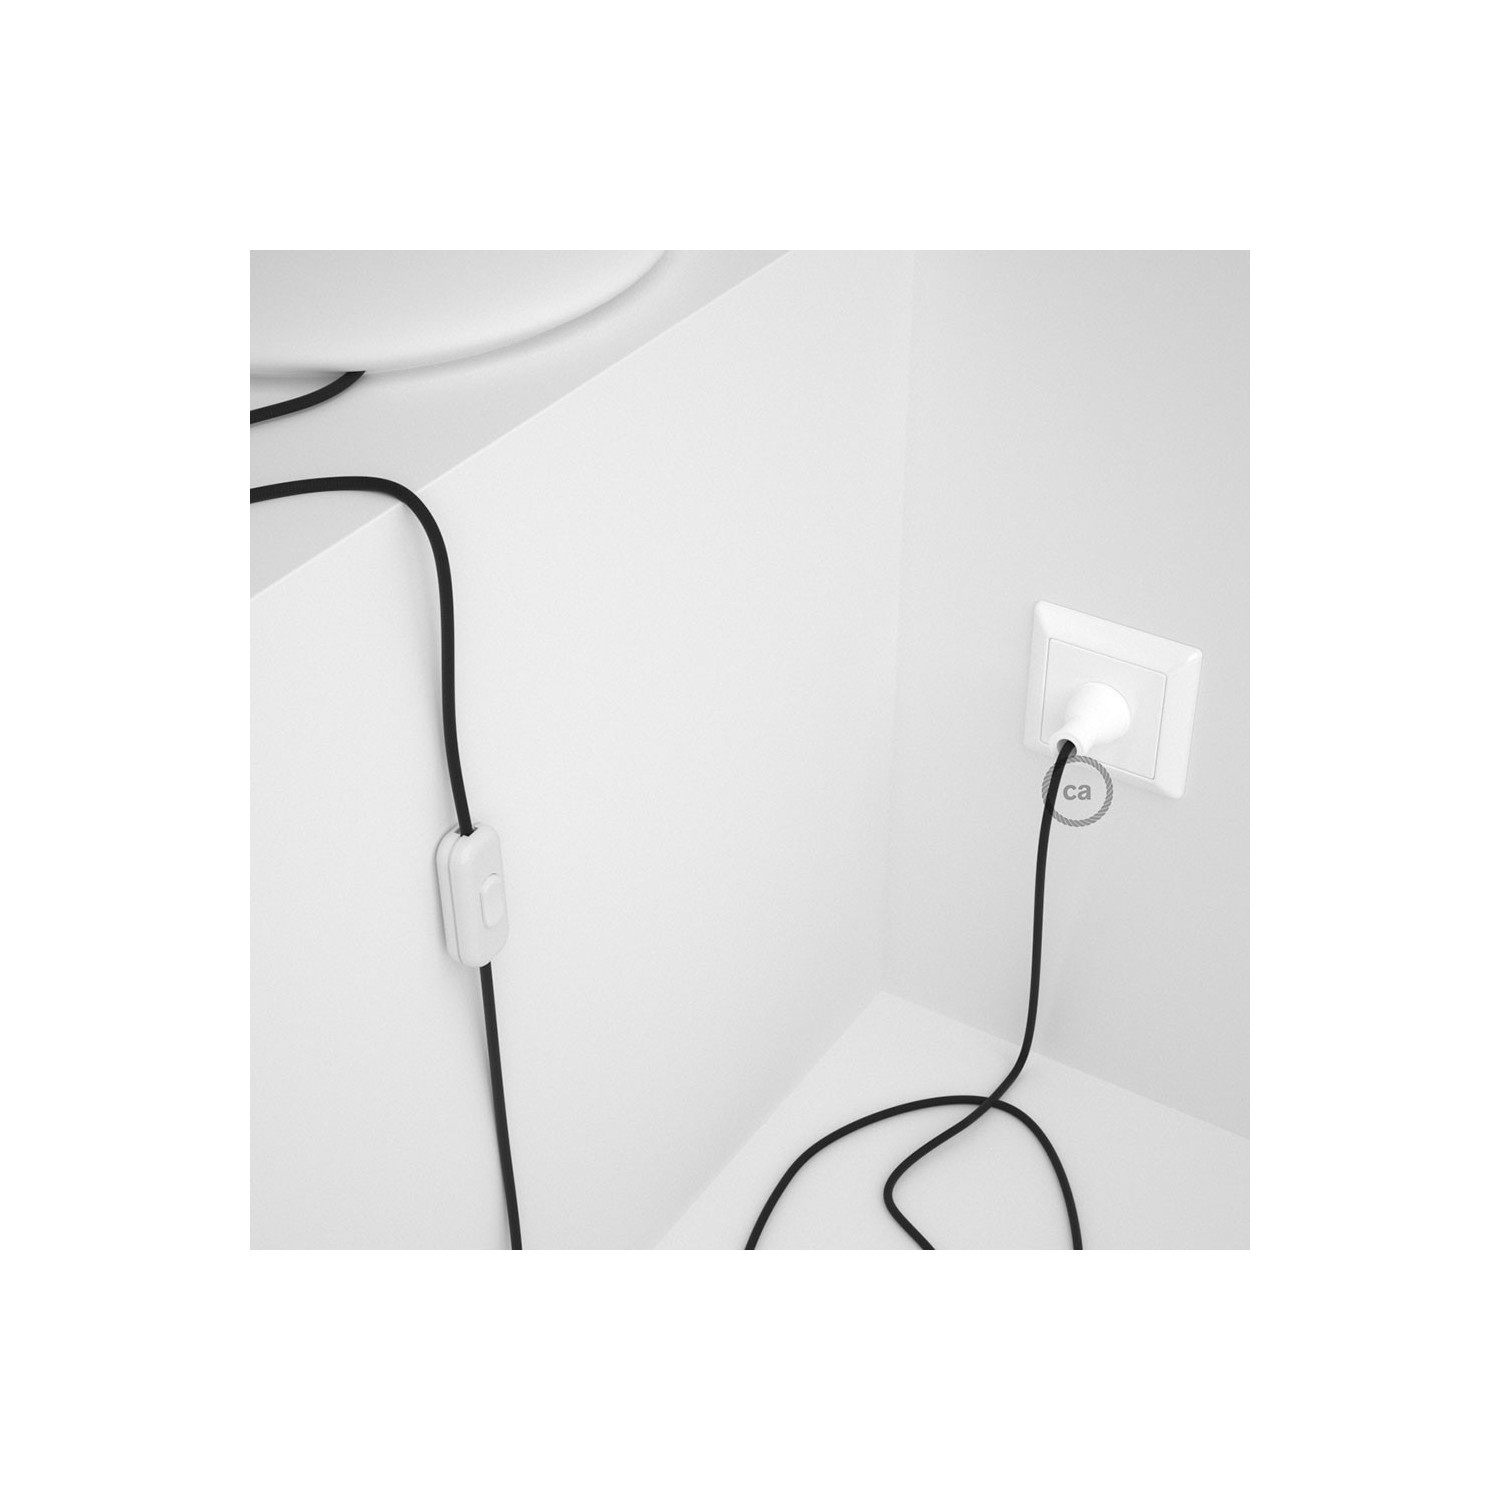 Cableado para lámpara de mesa, cable RM04 Rayón Negro 1,8 m. Elige el color de la clavija y del interruptor!